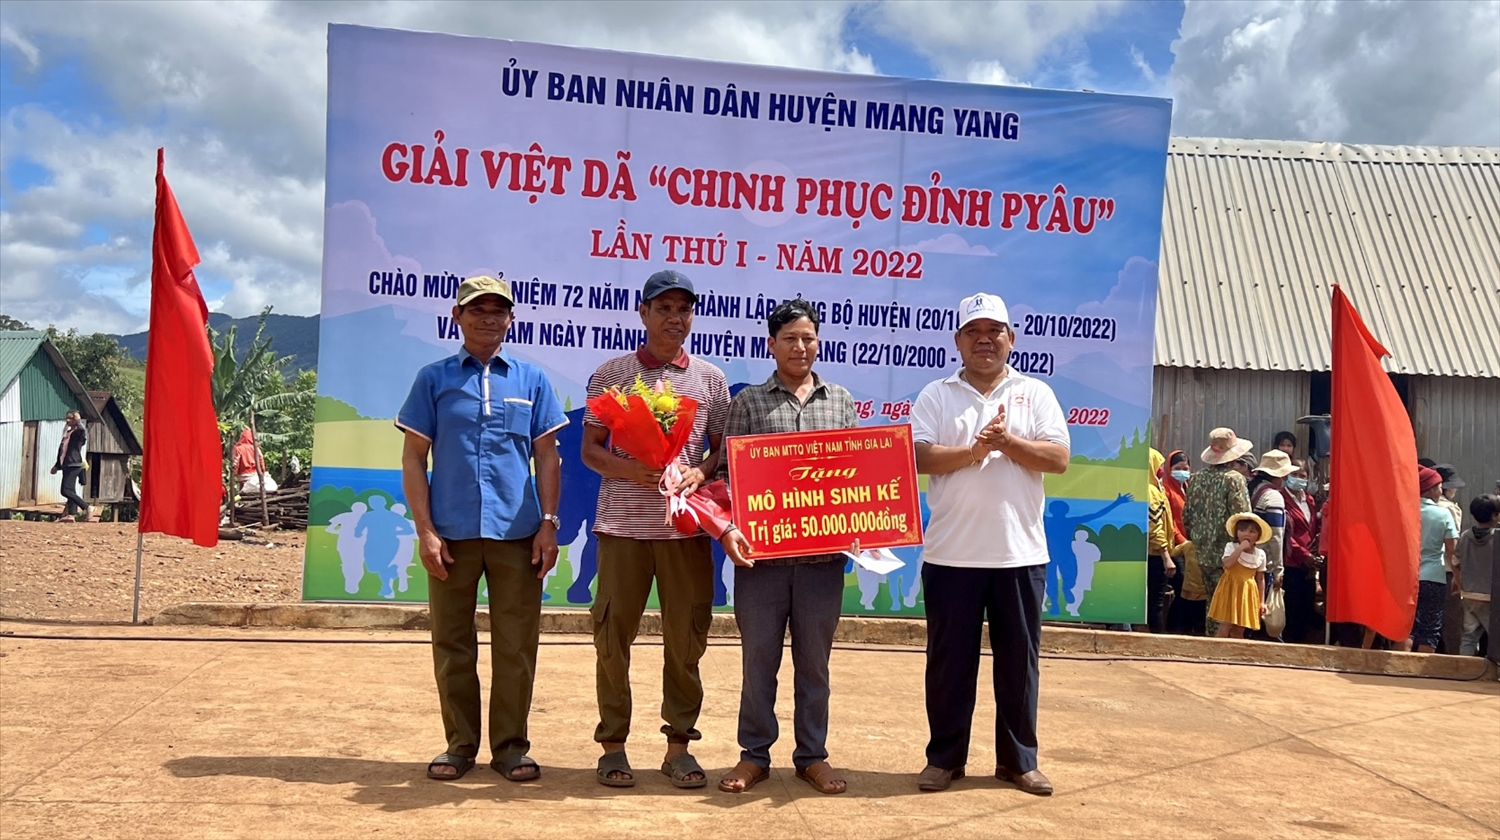 Thay mặt Ủy ban MTTQ Việt Nam tỉnh, đồng chí Hồ Văn Điềm đã trao mô hình sinh kế trị giá 50 triệu đồng cho Nhân dân làng Pờ Yầu 